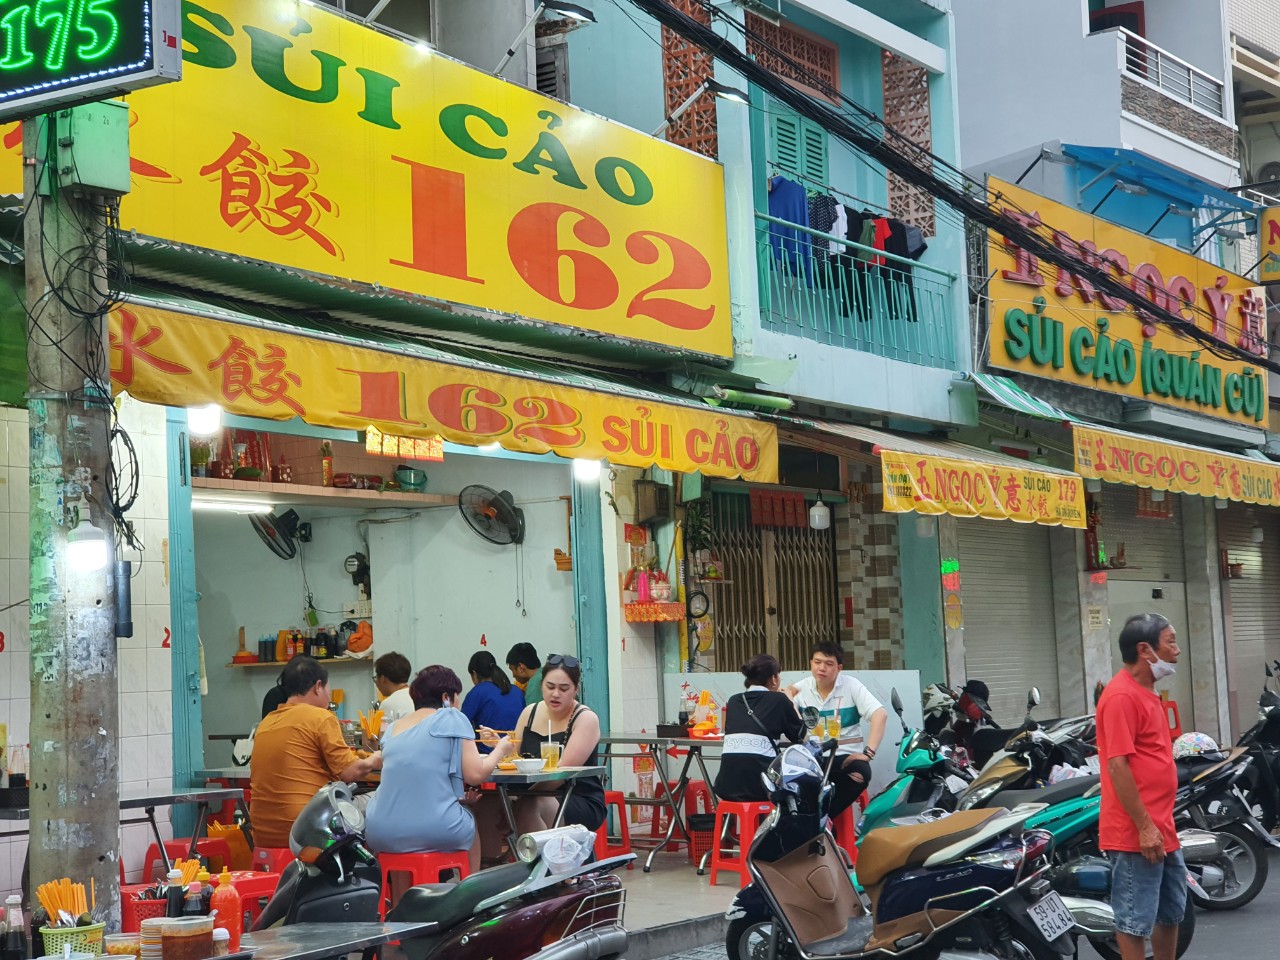 Đường Hà Tôn Quyền - phố sủi cảo nổi tiếng nhất Sài Gòn - Ảnh 1.